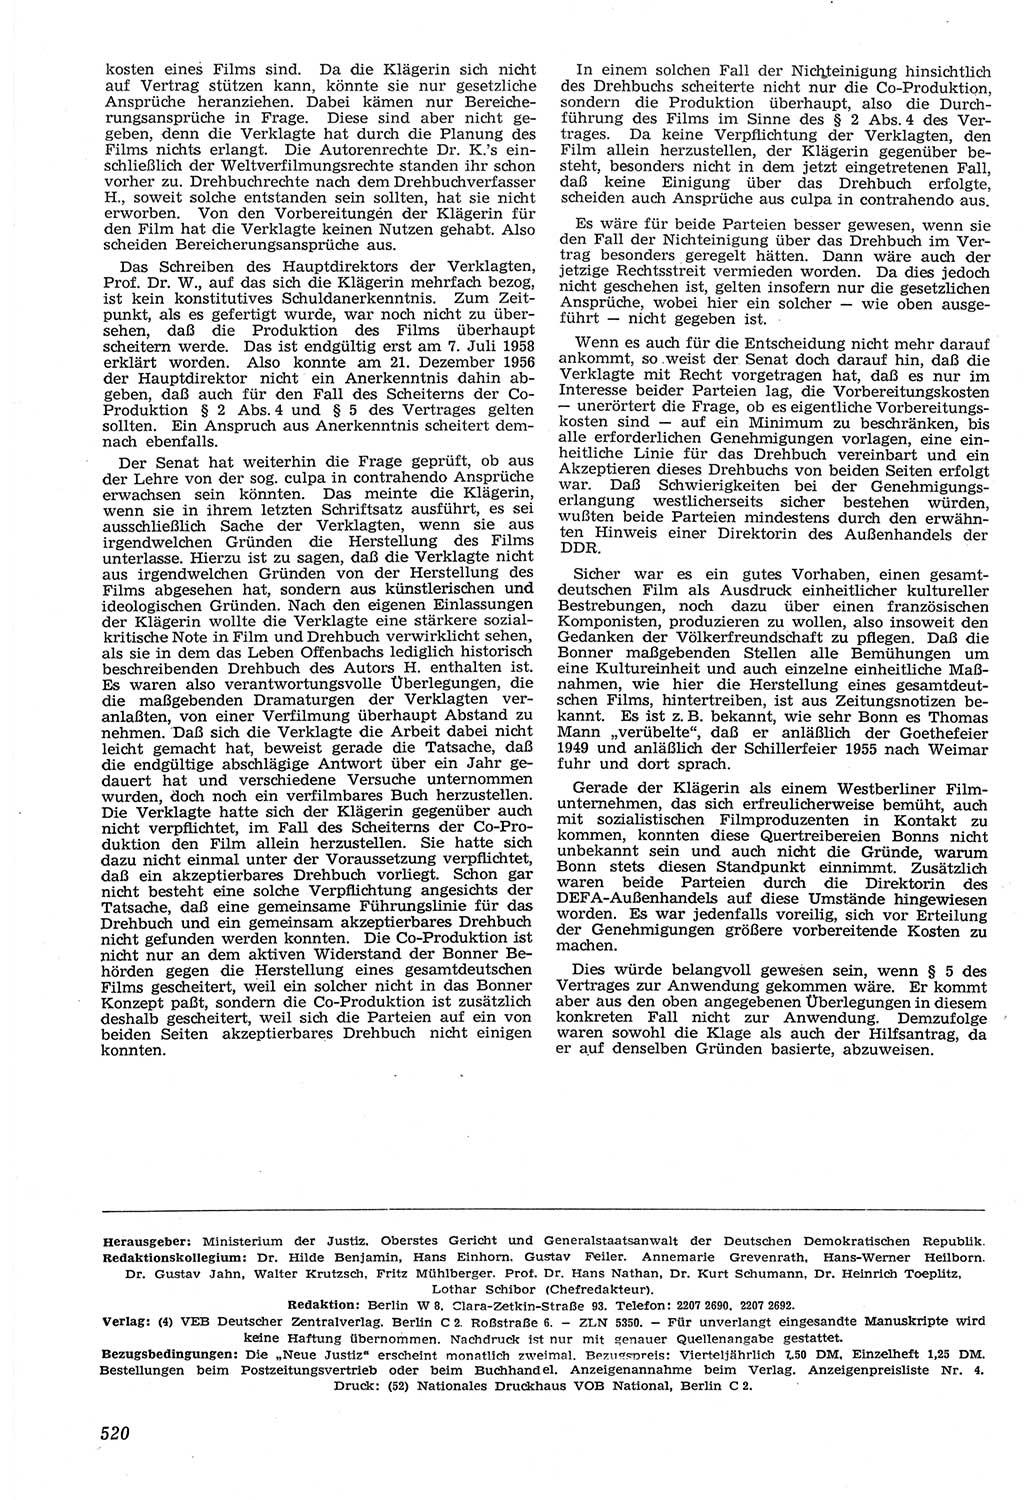 Neue Justiz (NJ), Zeitschrift für Recht und Rechtswissenschaft [Deutsche Demokratische Republik (DDR)], 14. Jahrgang 1960, Seite 520 (NJ DDR 1960, S. 520)